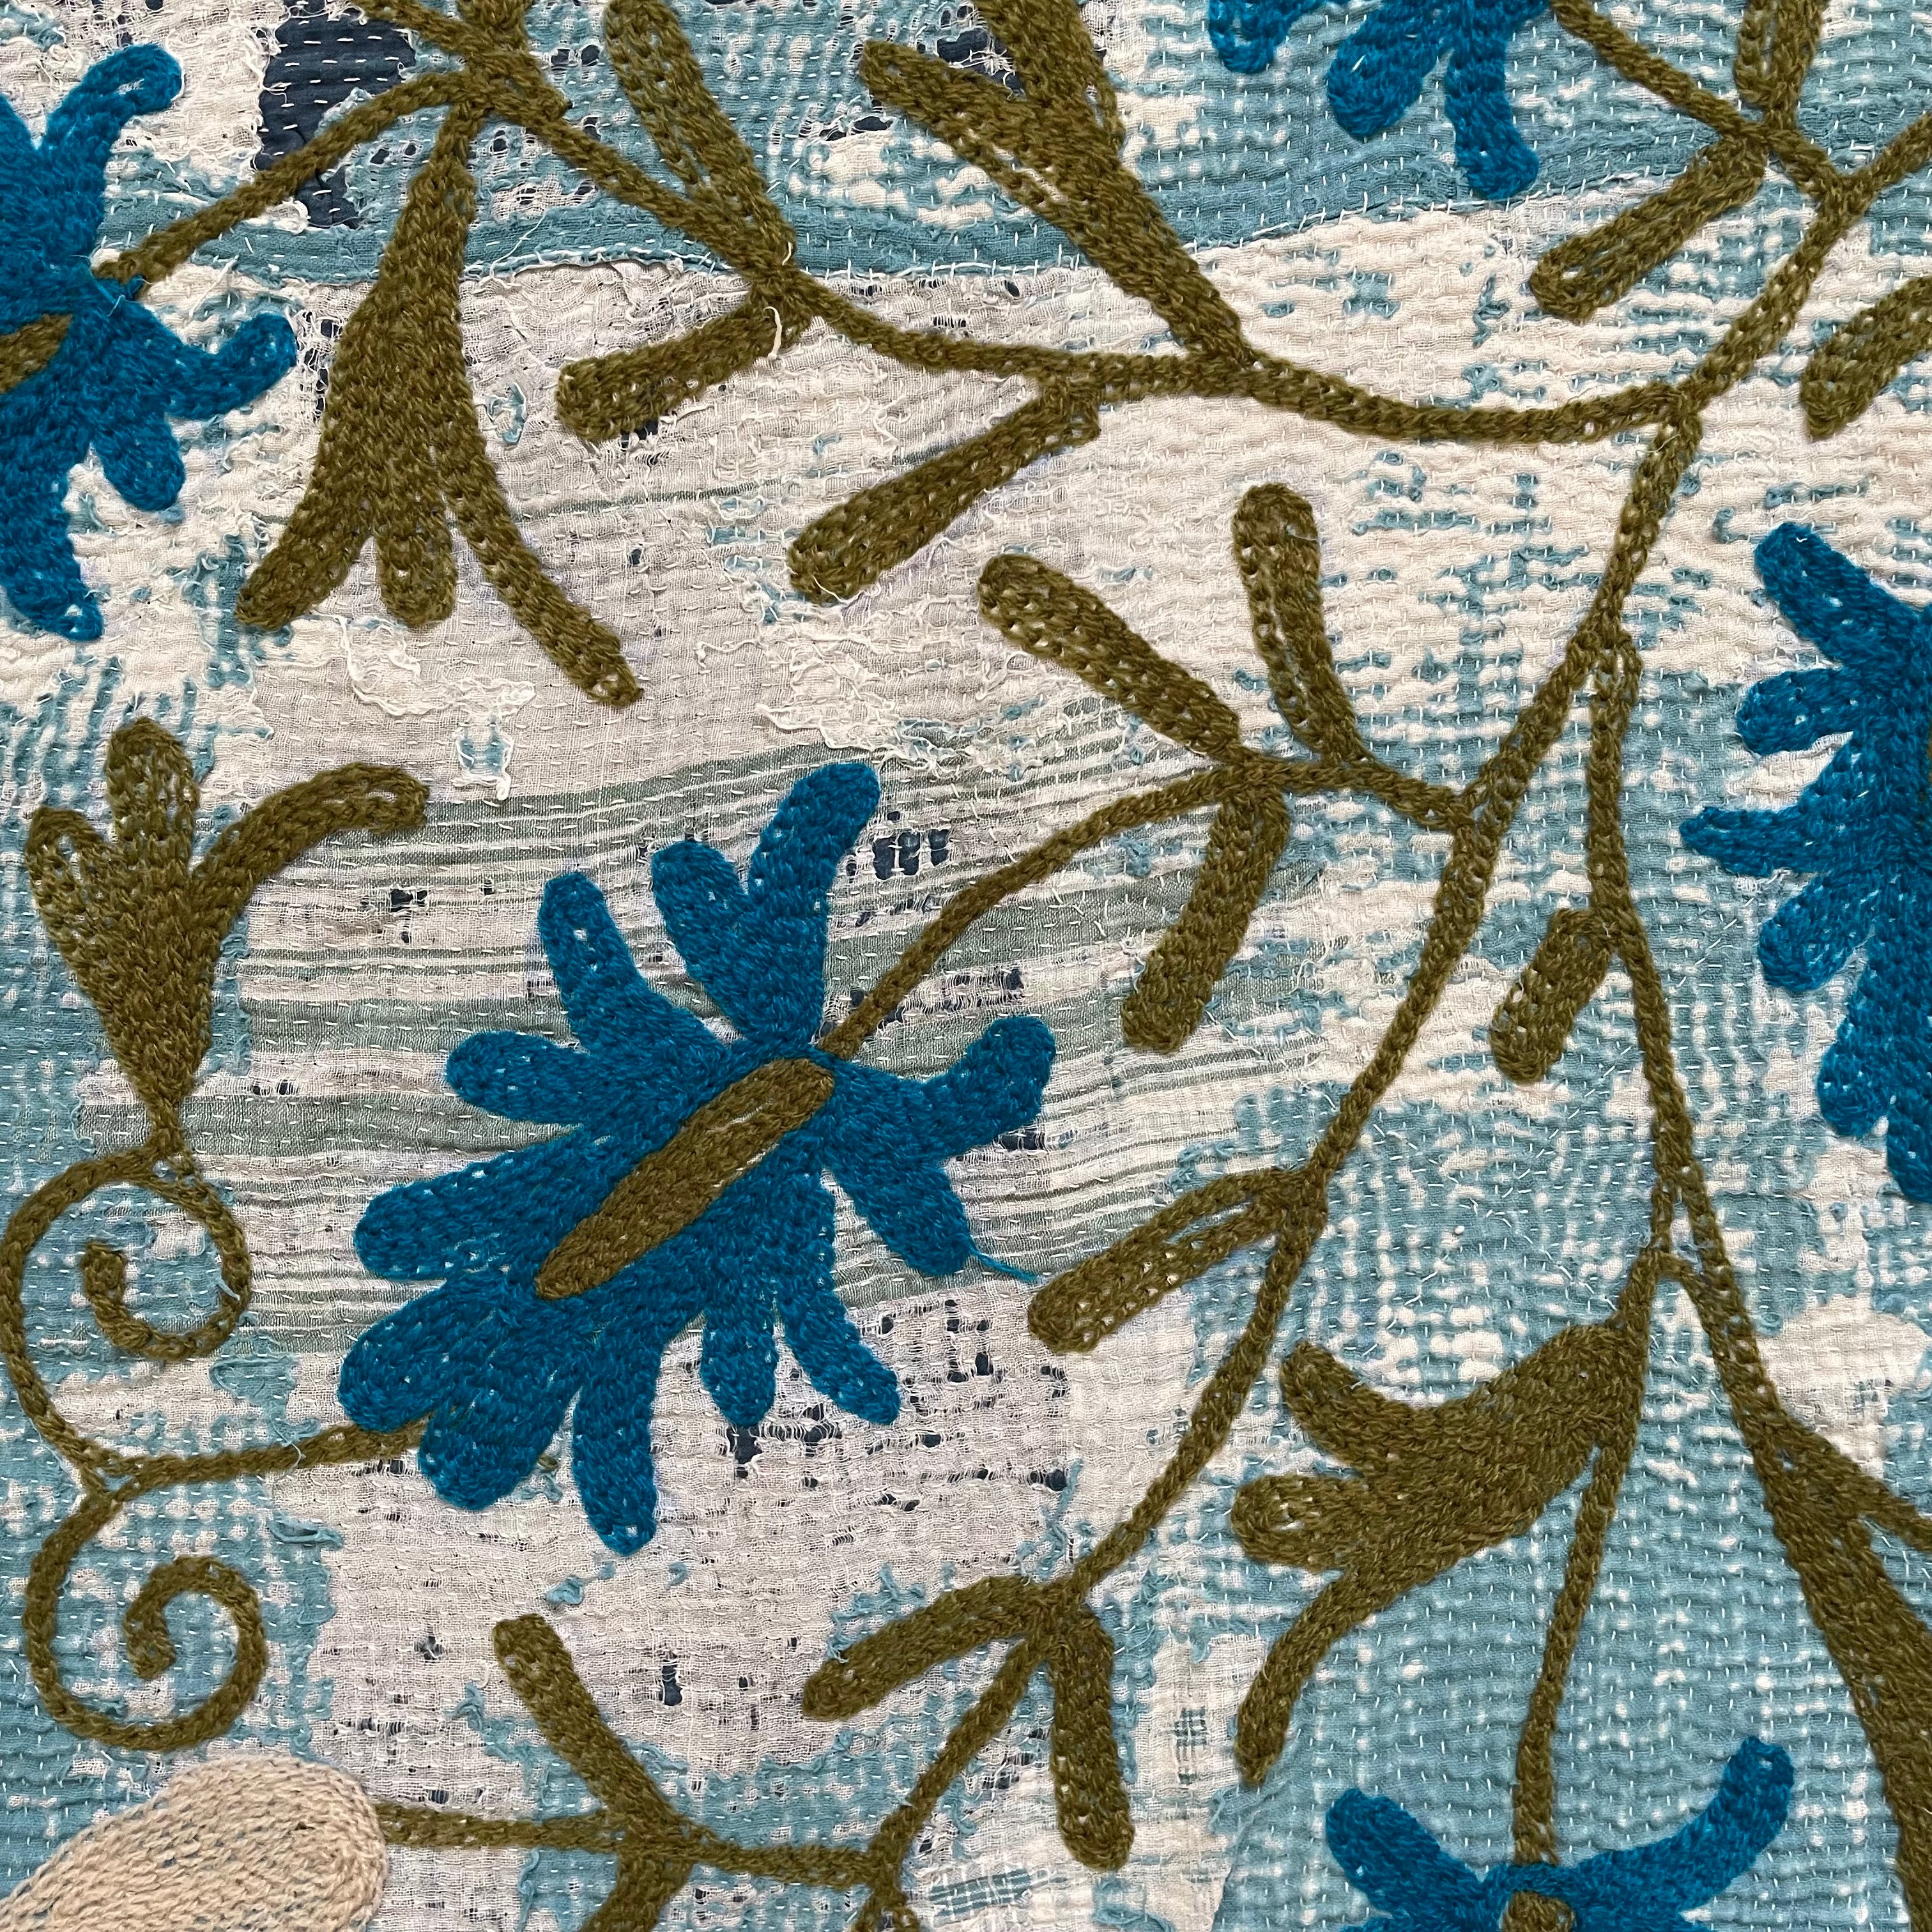 長く愛されてきたヴィンテージカンタキルトに素敵なデザインが合わさったスザニ刺繍カンタキルト